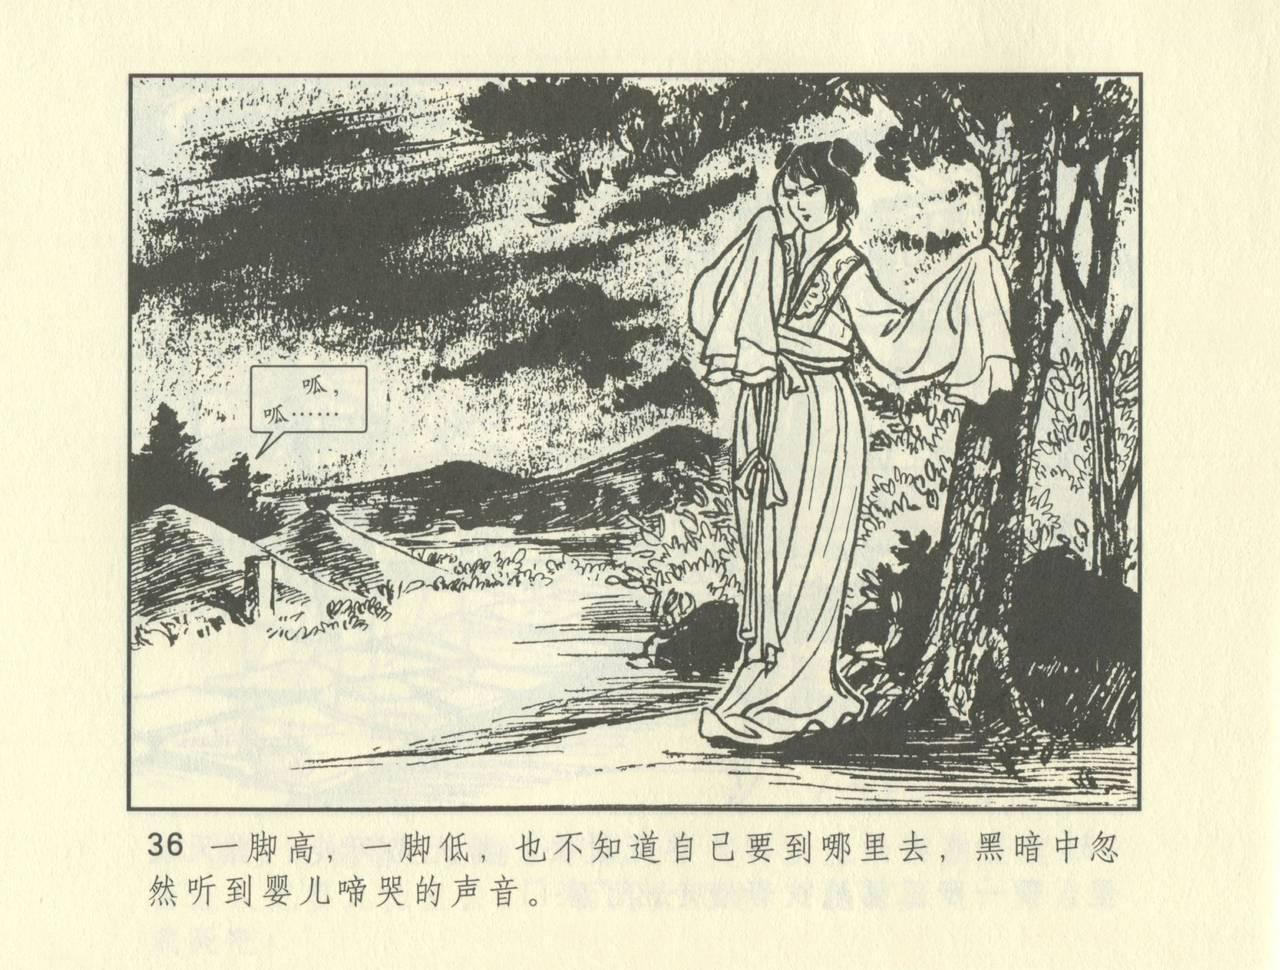 聊斋志异 张玮等绘 天津人民美术出版社 卷二十一 ~ 三十 245